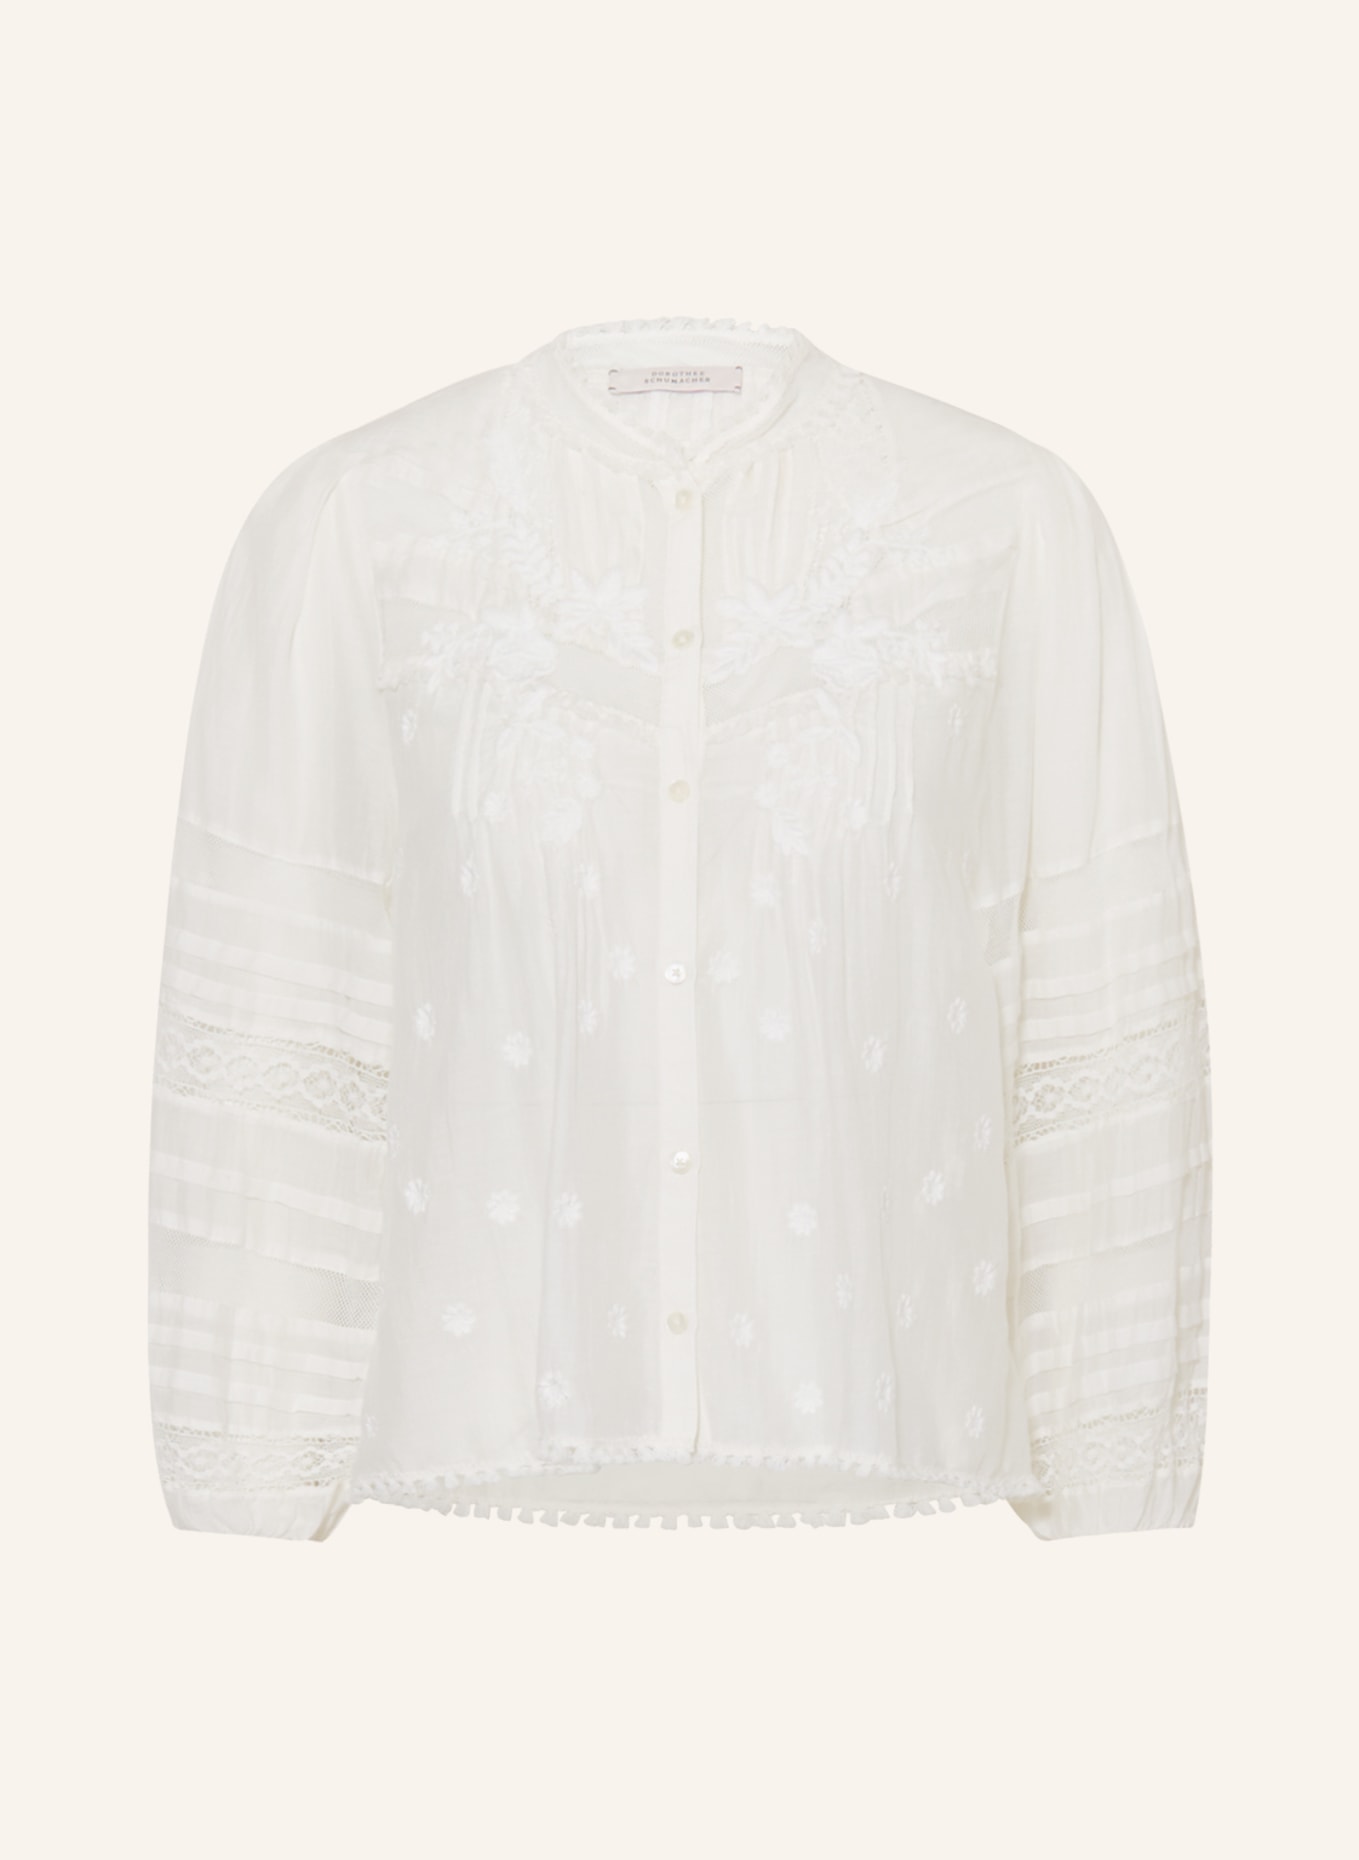 DOROTHEE SCHUMACHER Lace blouse, Color: ECRU (Image 1)